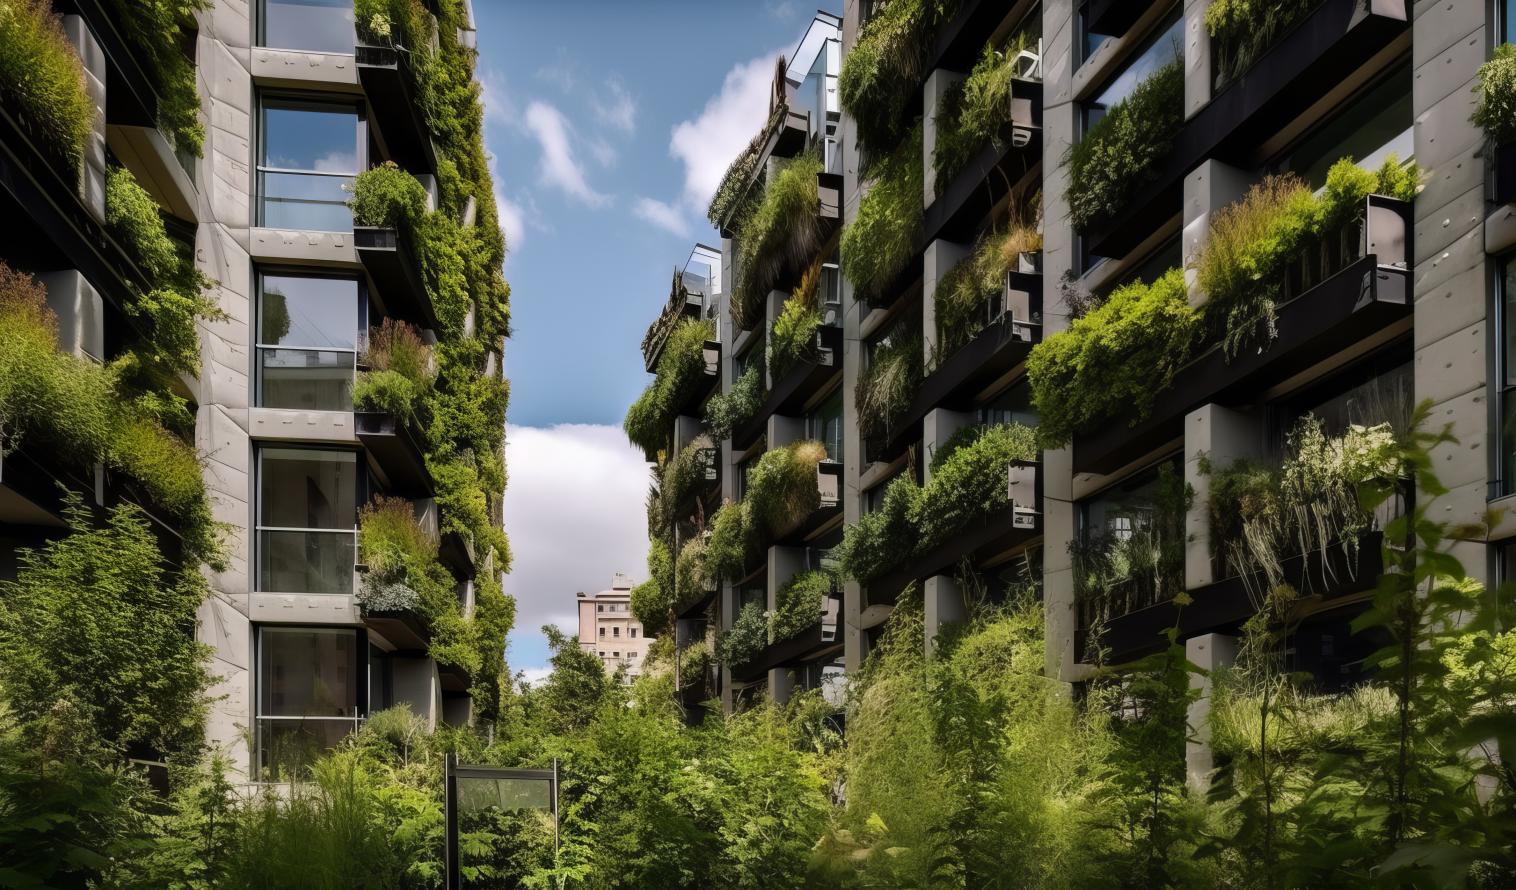 Gärten und Grünflächen in einer futuristischen städtischen Umgebung